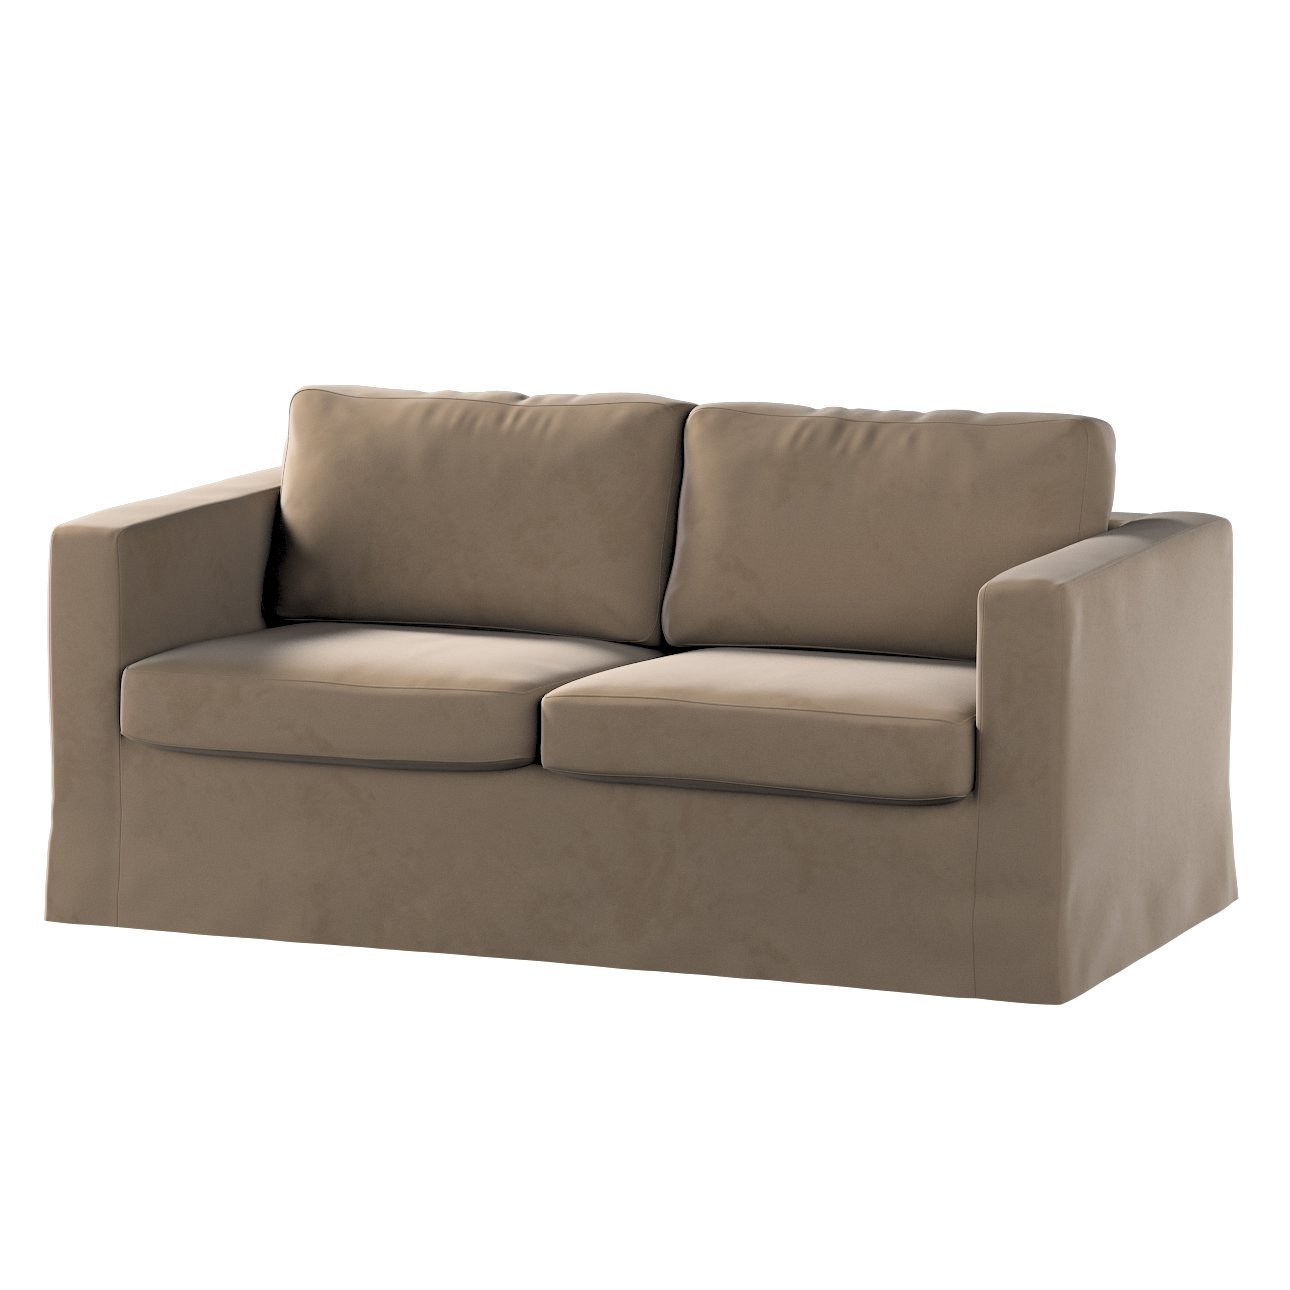 Bezug für Karlstad 2-Sitzer Sofa nicht ausklappbar, lang, braun, Sofahusse, günstig online kaufen